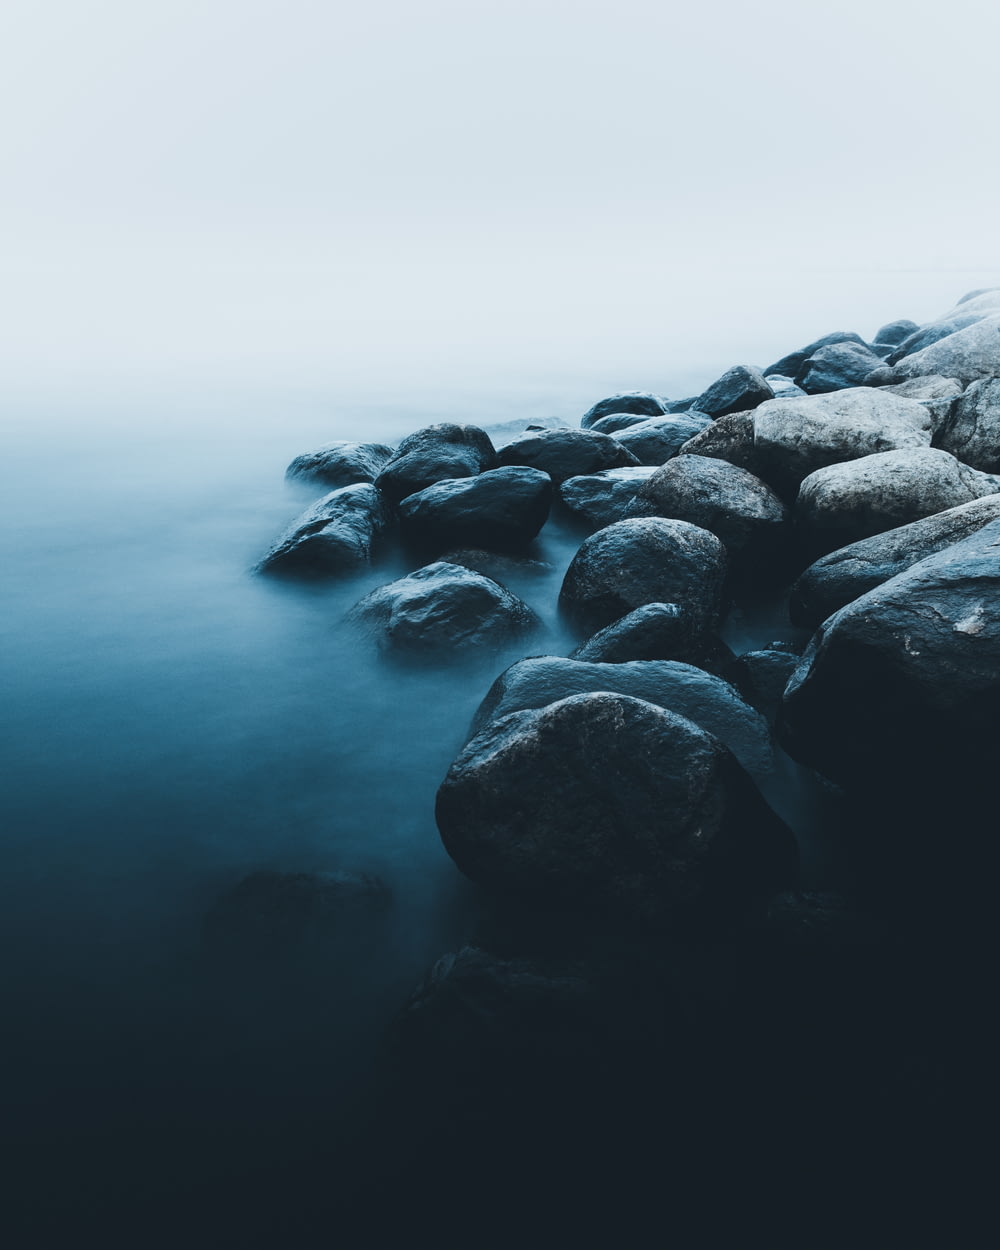 rocks near body of water